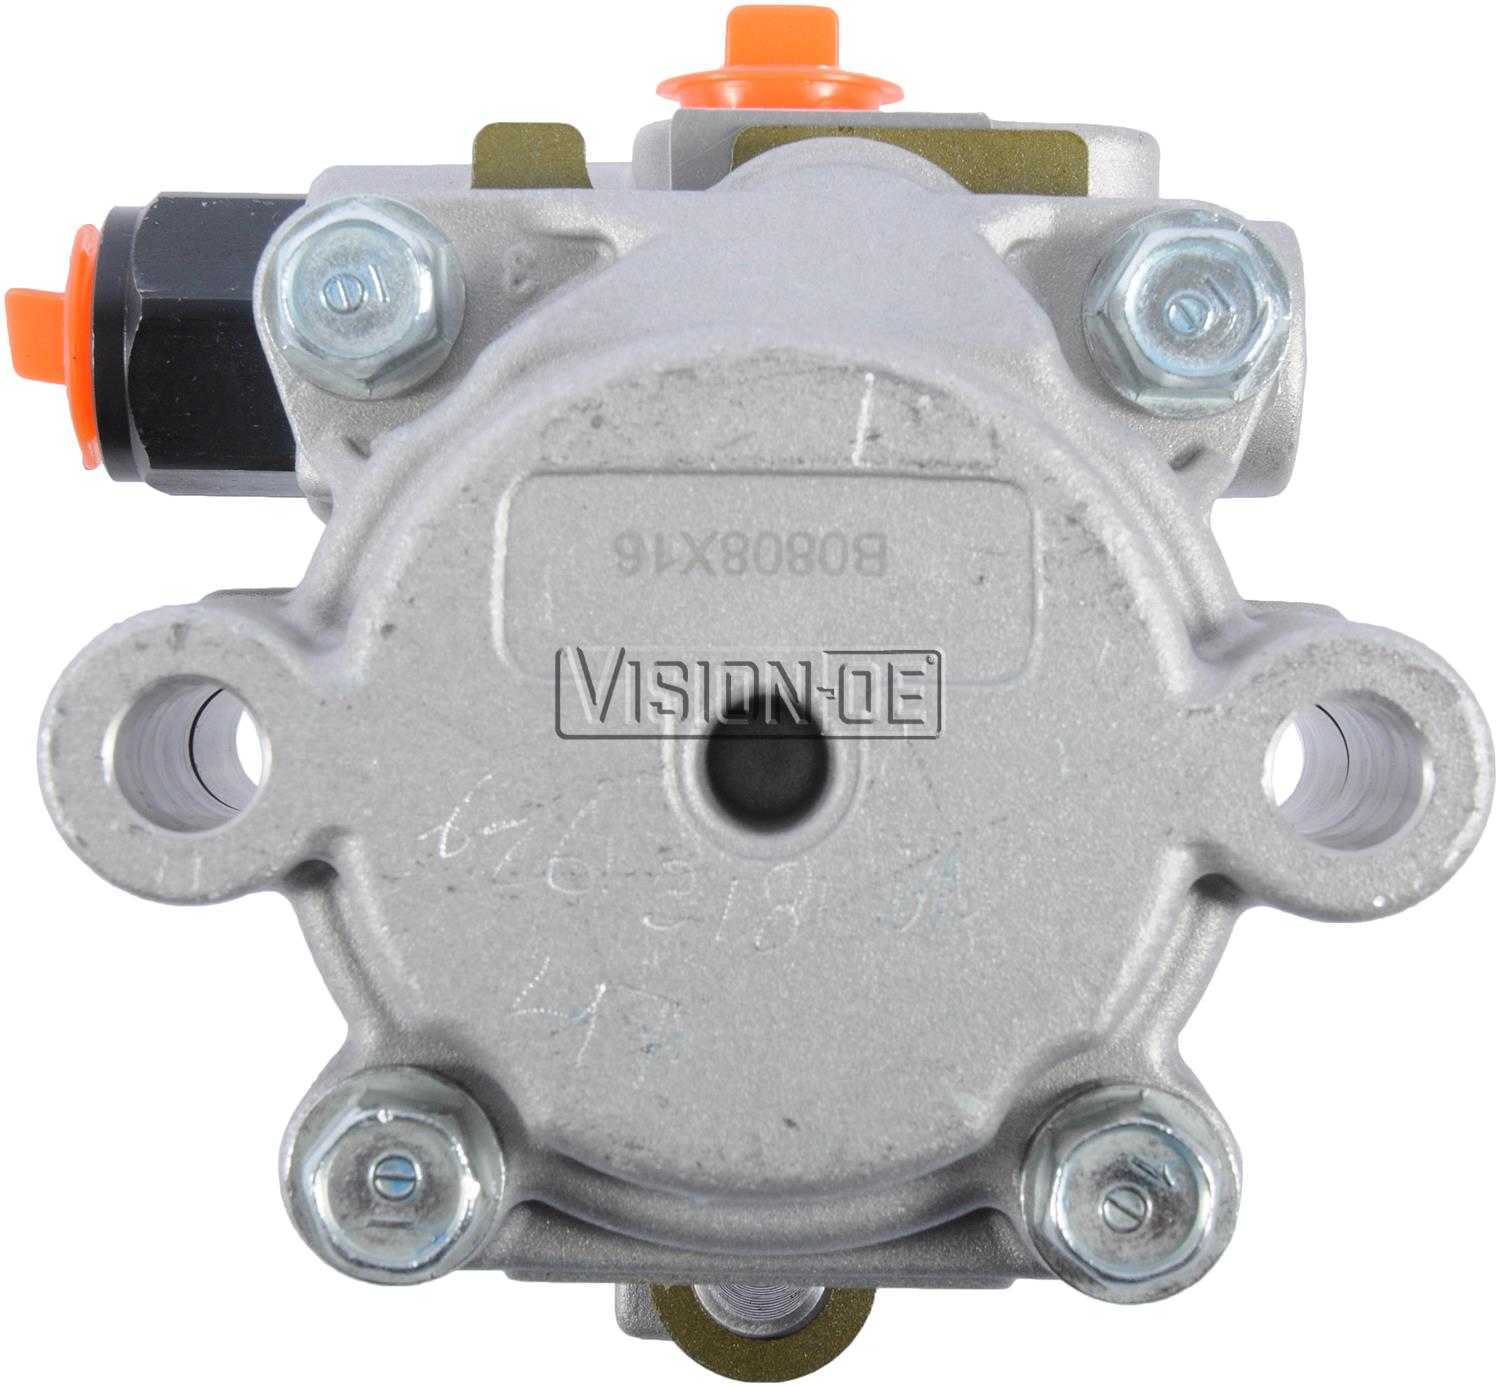 VISION-OE - New Power Steering Pump - VOE N990-0442